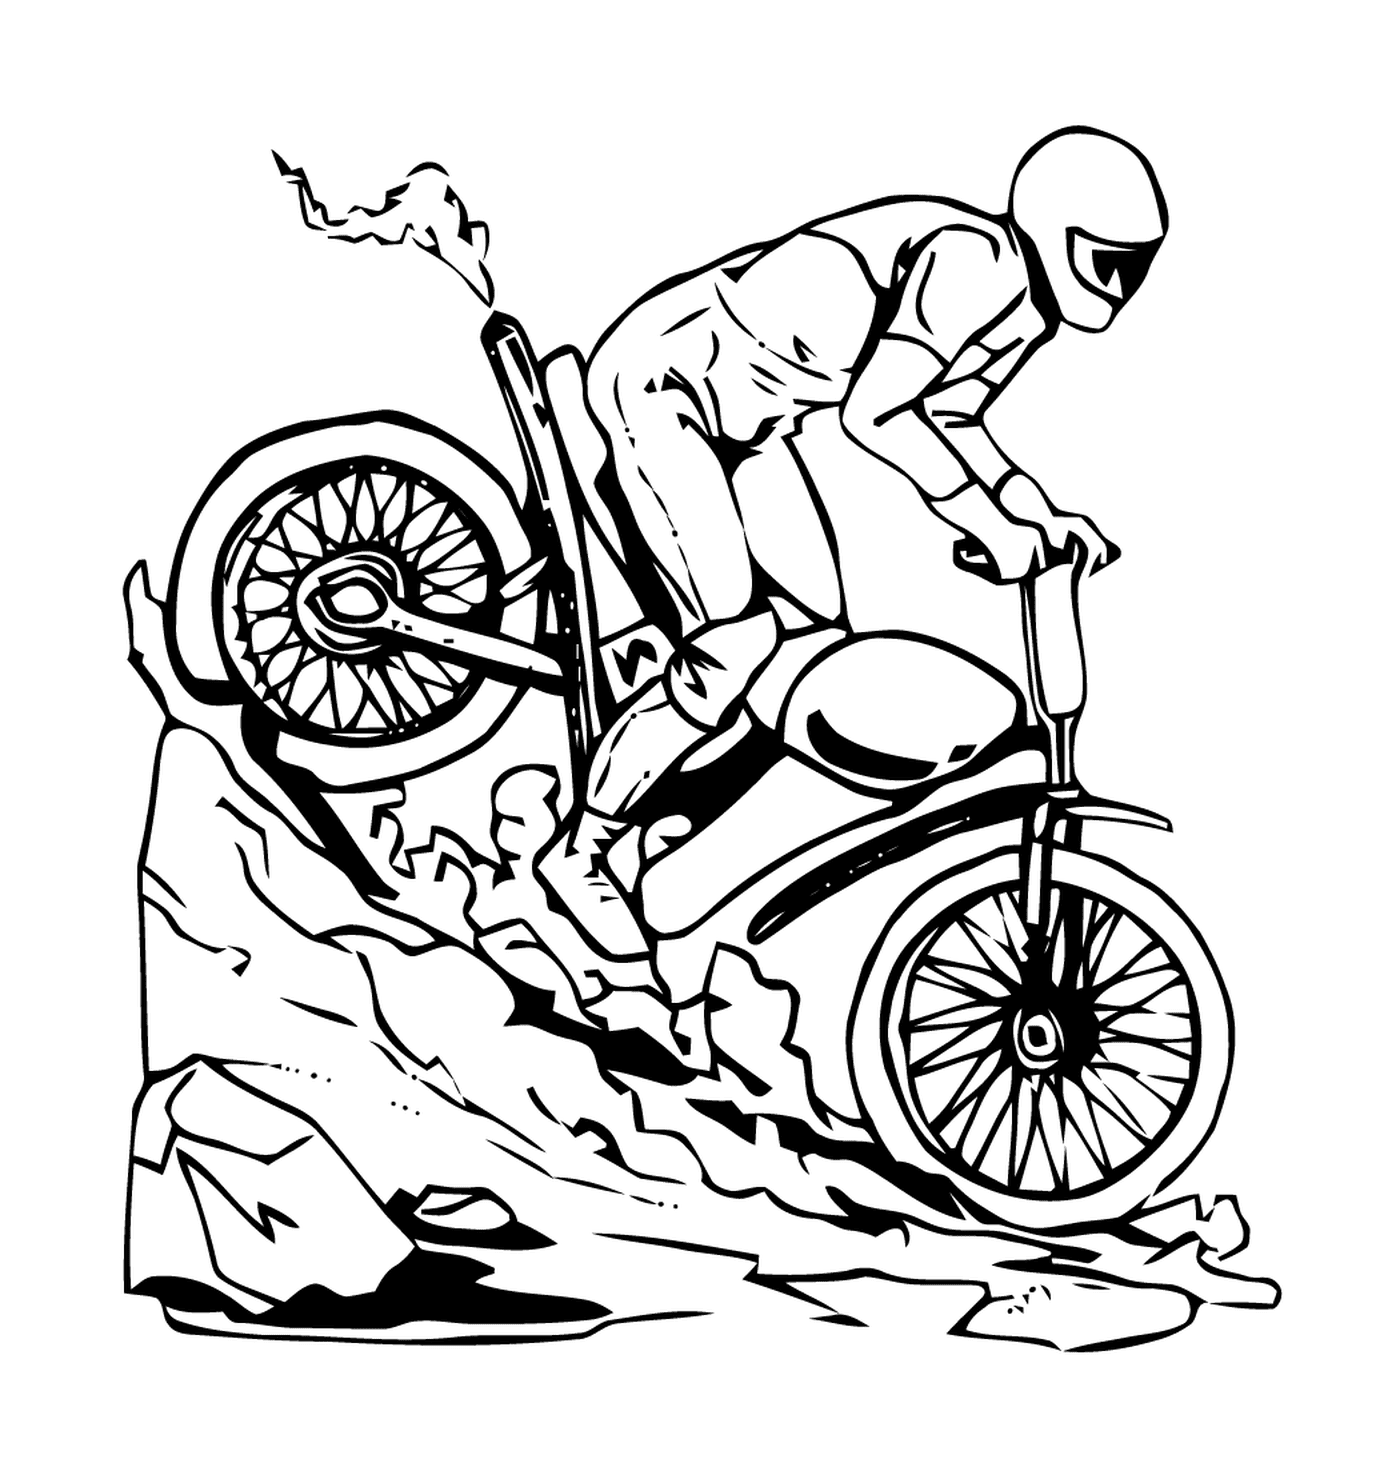  Maschio su una bicicletta scendendo una collina 